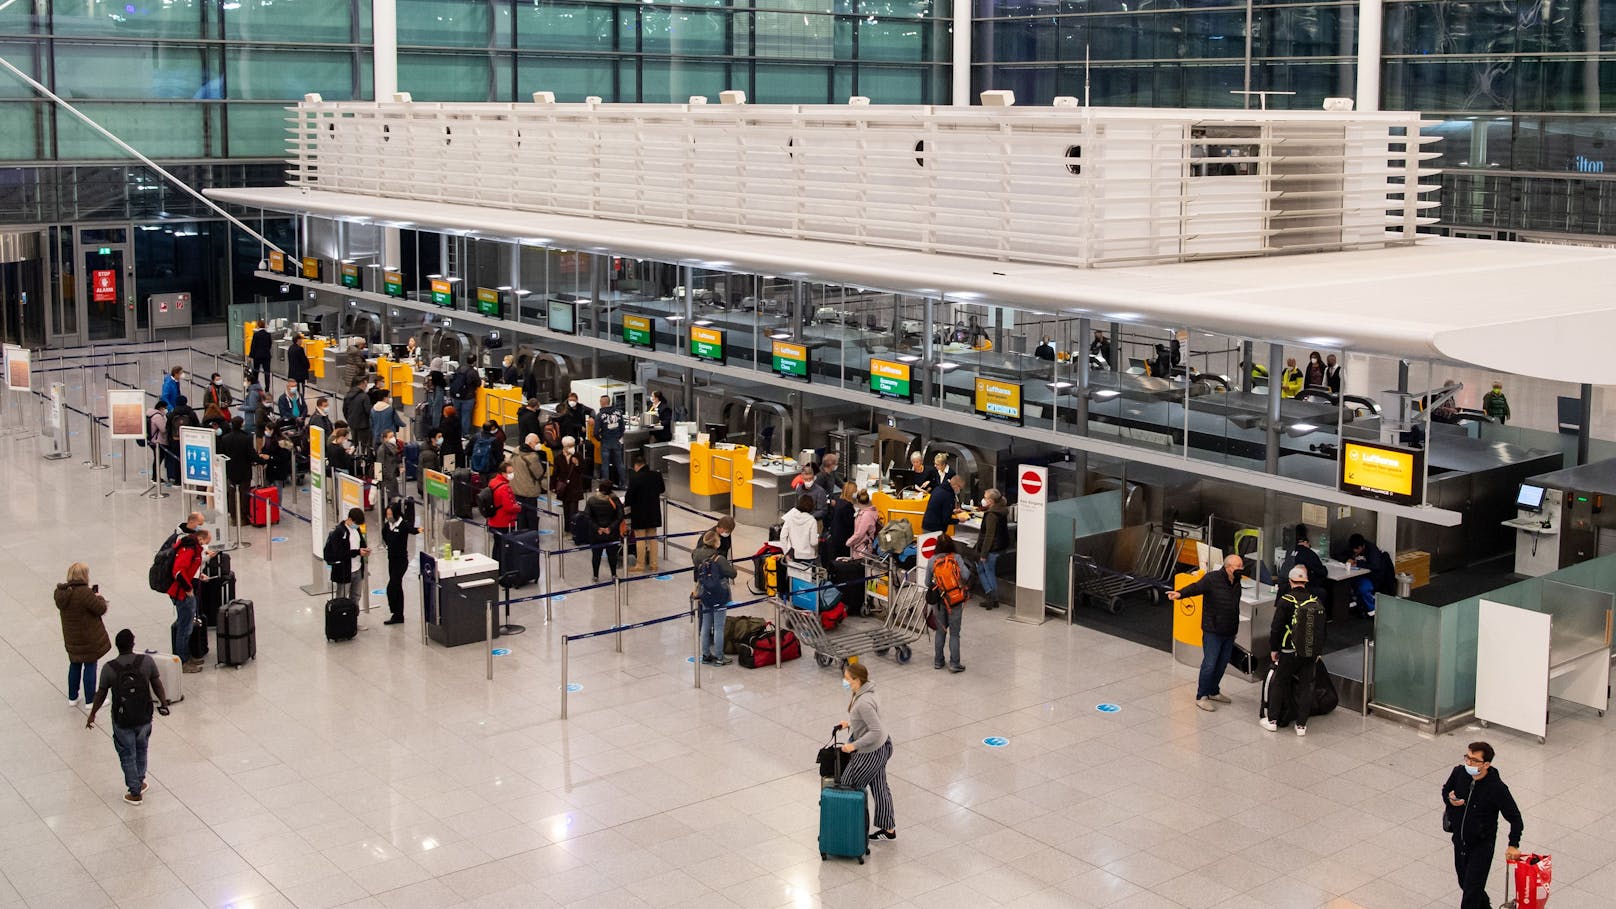 Zwei Reisende, die am 24. November in München landeten, haben sich mit der Omikron-Variante infiziert.